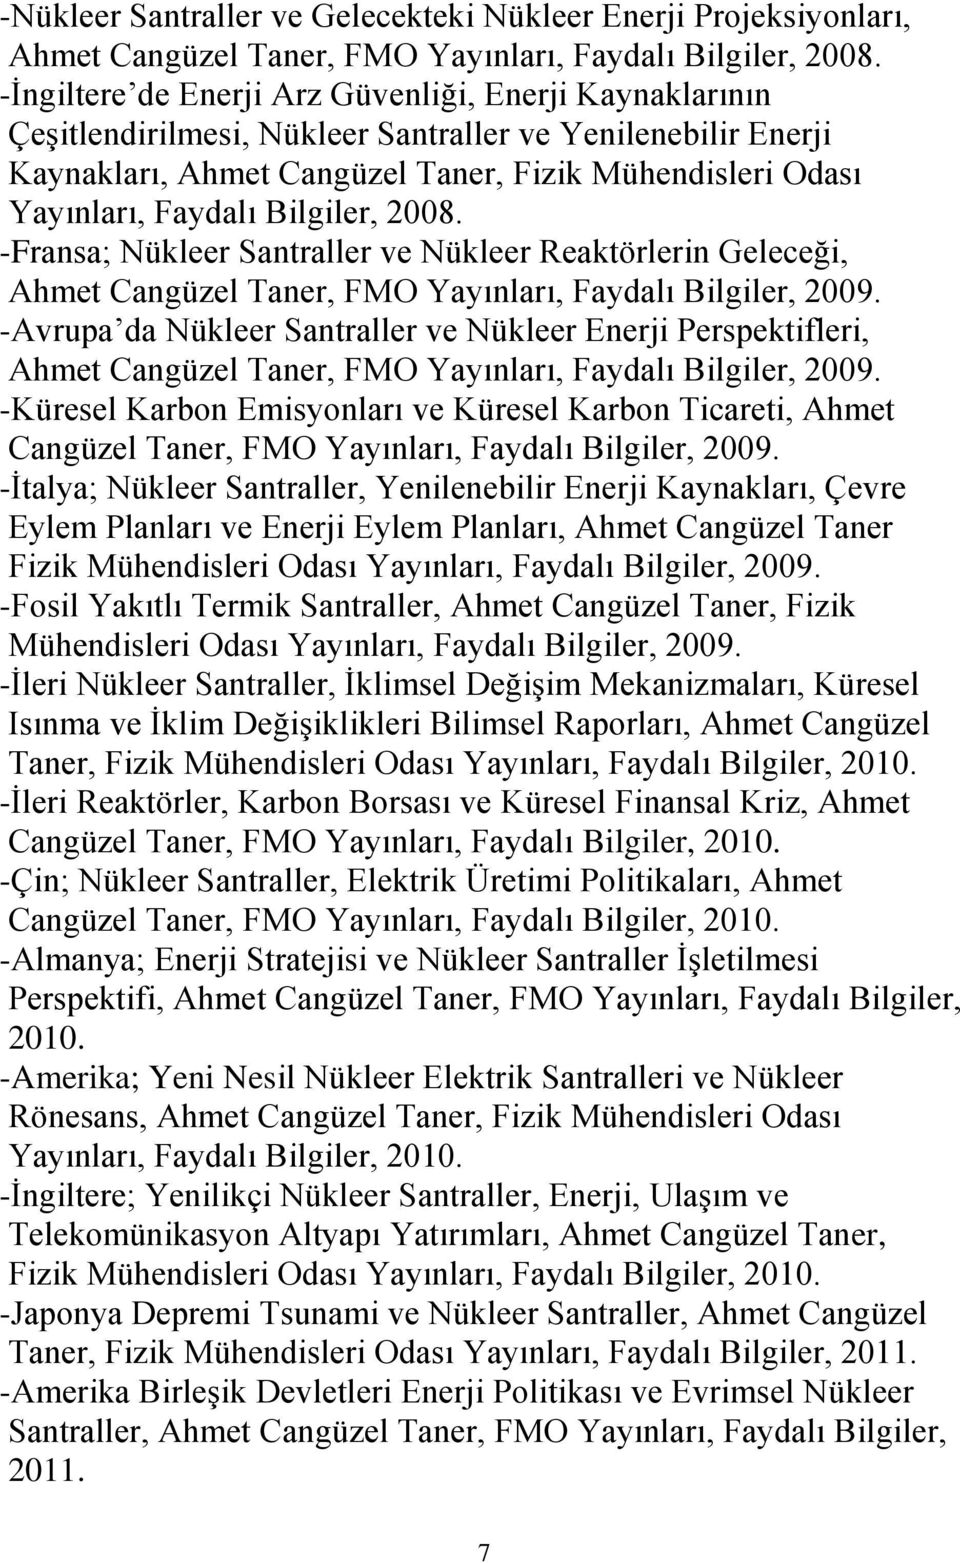 Bilgiler, 2008. -Fransa; Nükleer Santraller ve Nükleer Reaktörlerin Geleceği, Ahmet Cangüzel Taner, FMO Yayınları, Faydalı Bilgiler, 2009.